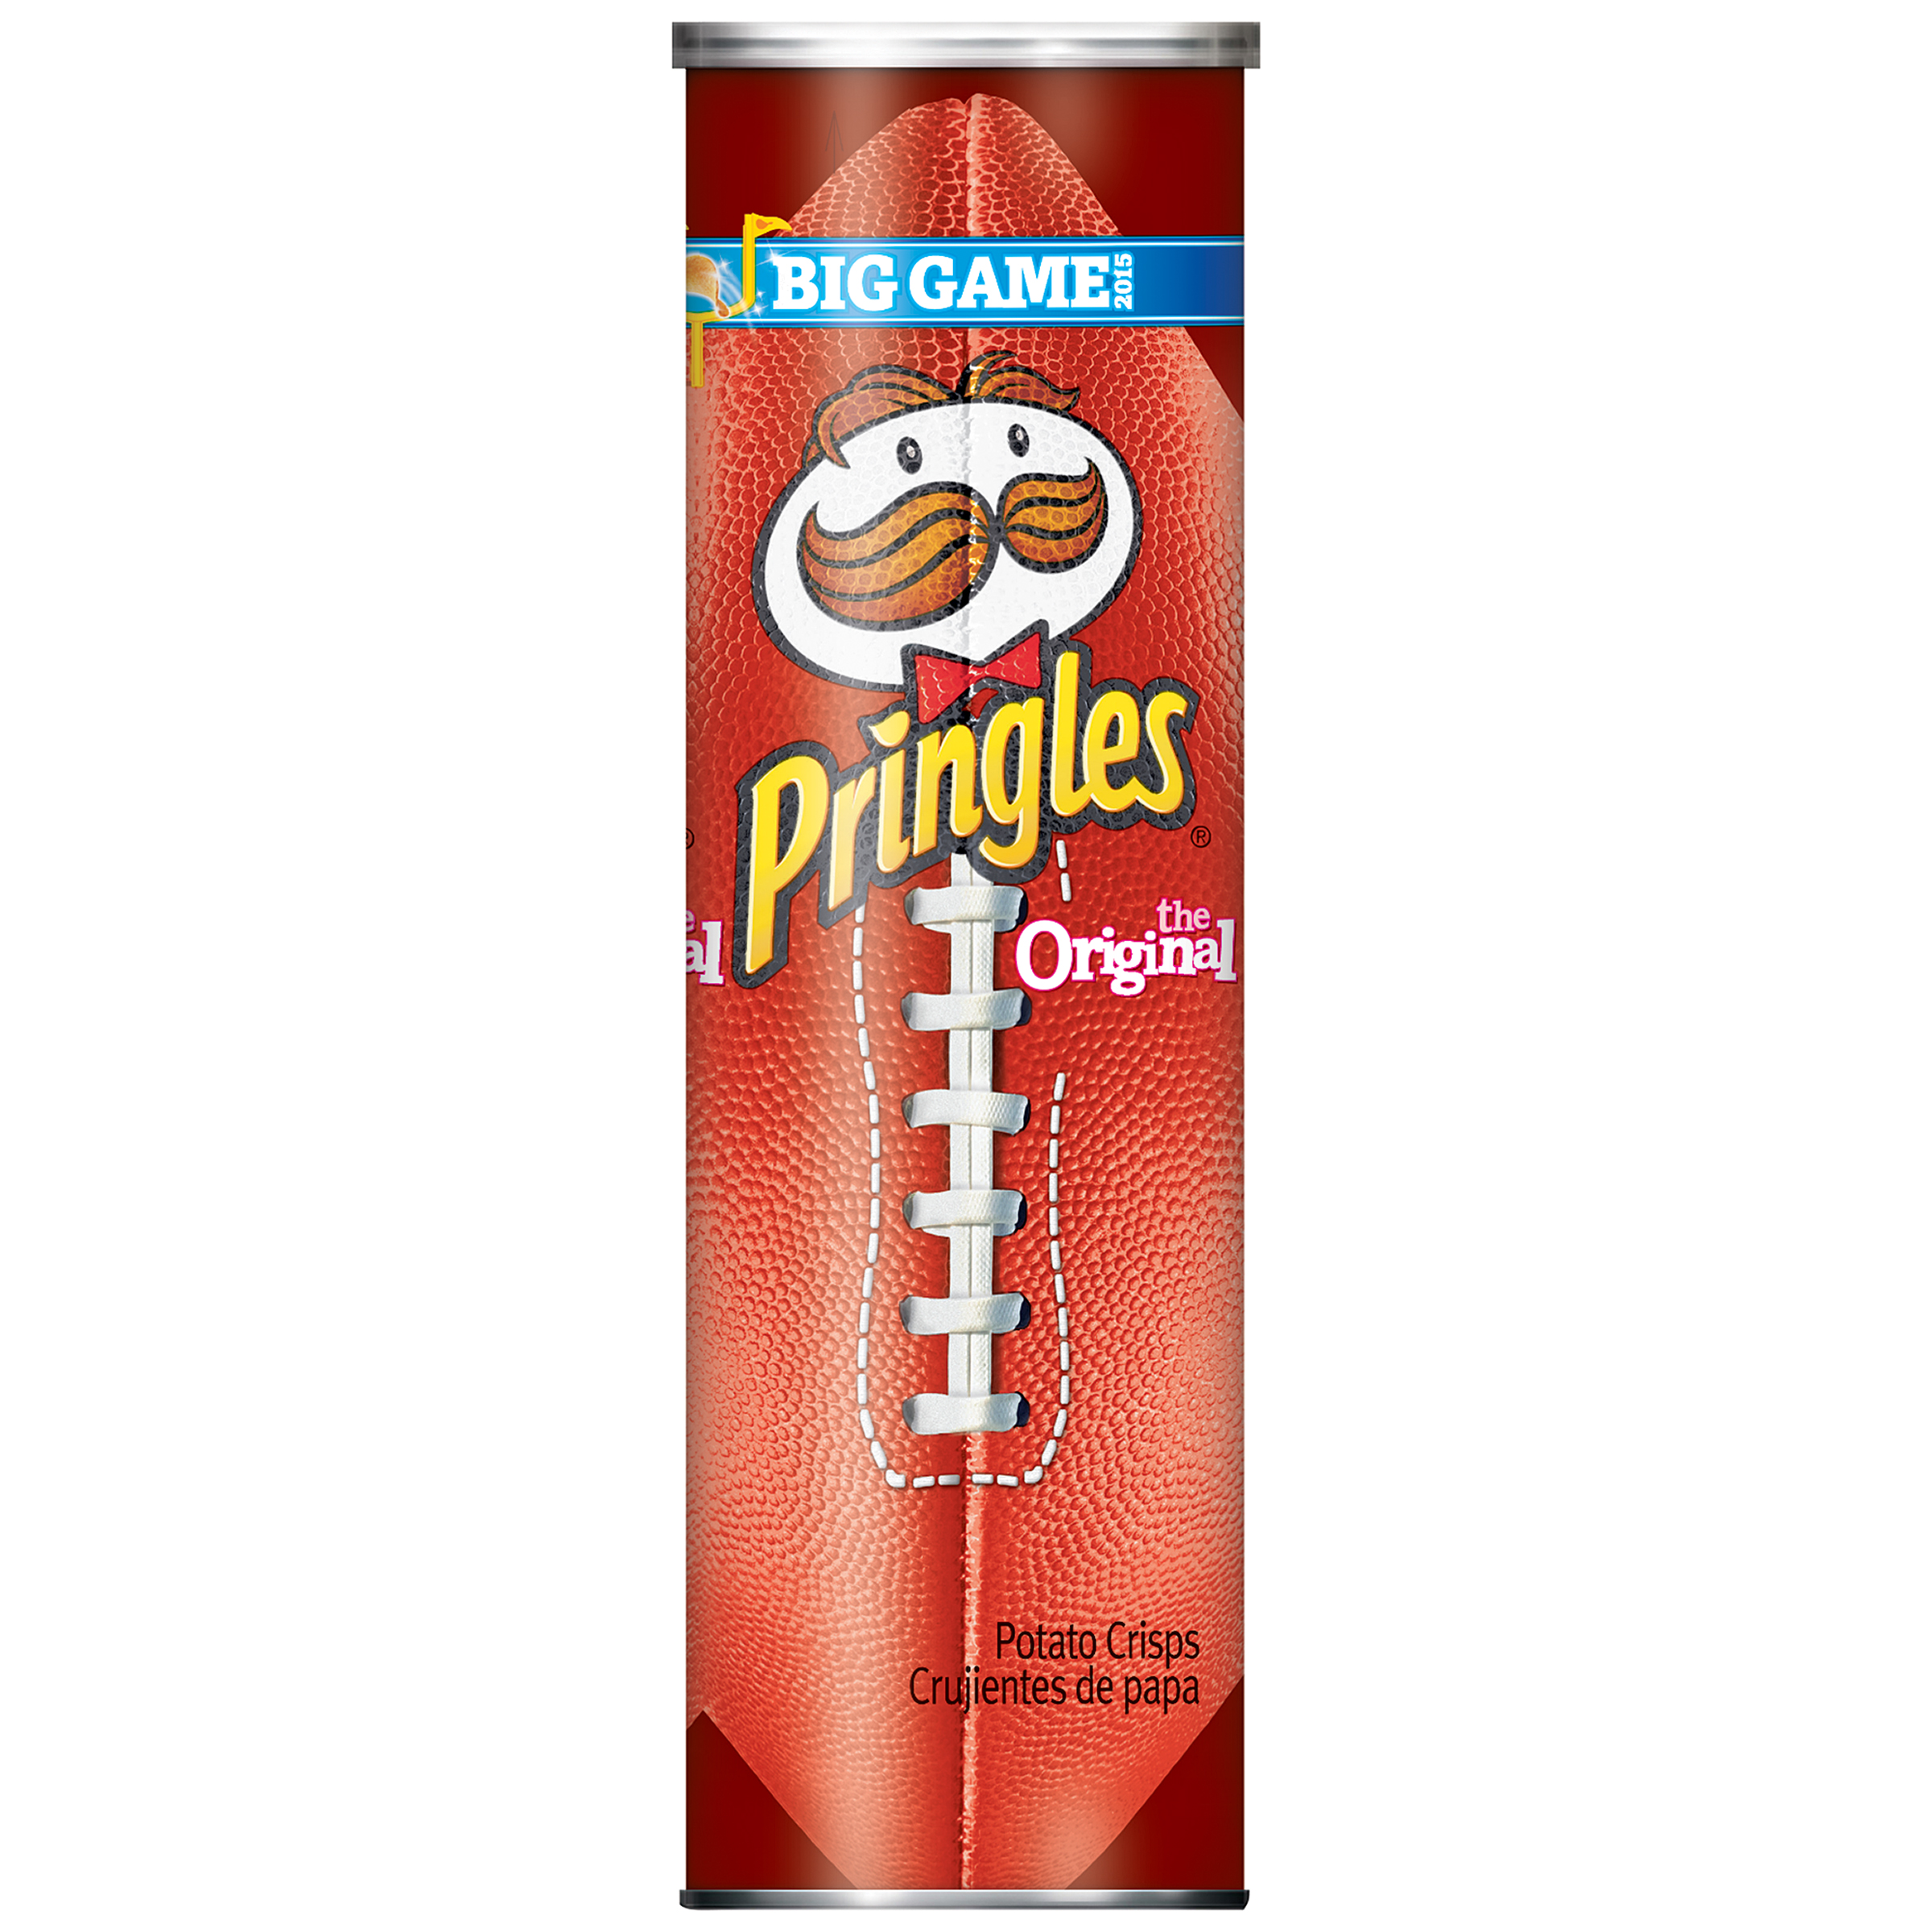 Pringles Potato Crisps Original, 5.68 oz, canister, No Artificial flavor